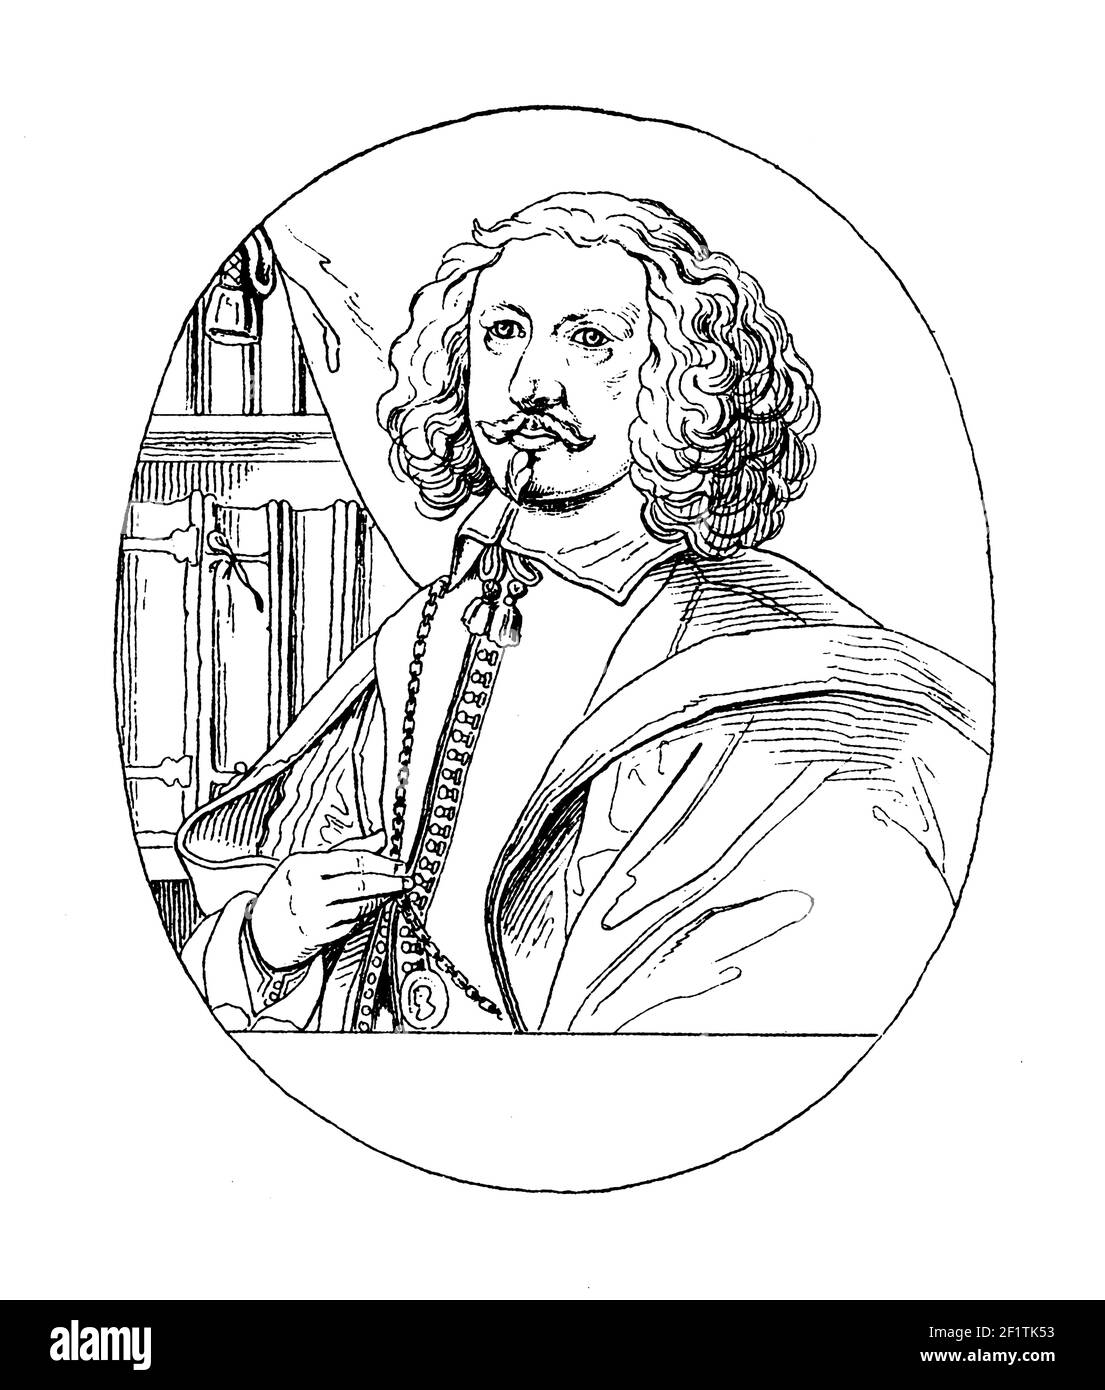 Antica illustrazione di un ritratto di Adamo Olearius, studioso tedesco, matematico, geografo e bibliotecario. È nato il 16 agosto 1603 ad Ascher Foto Stock